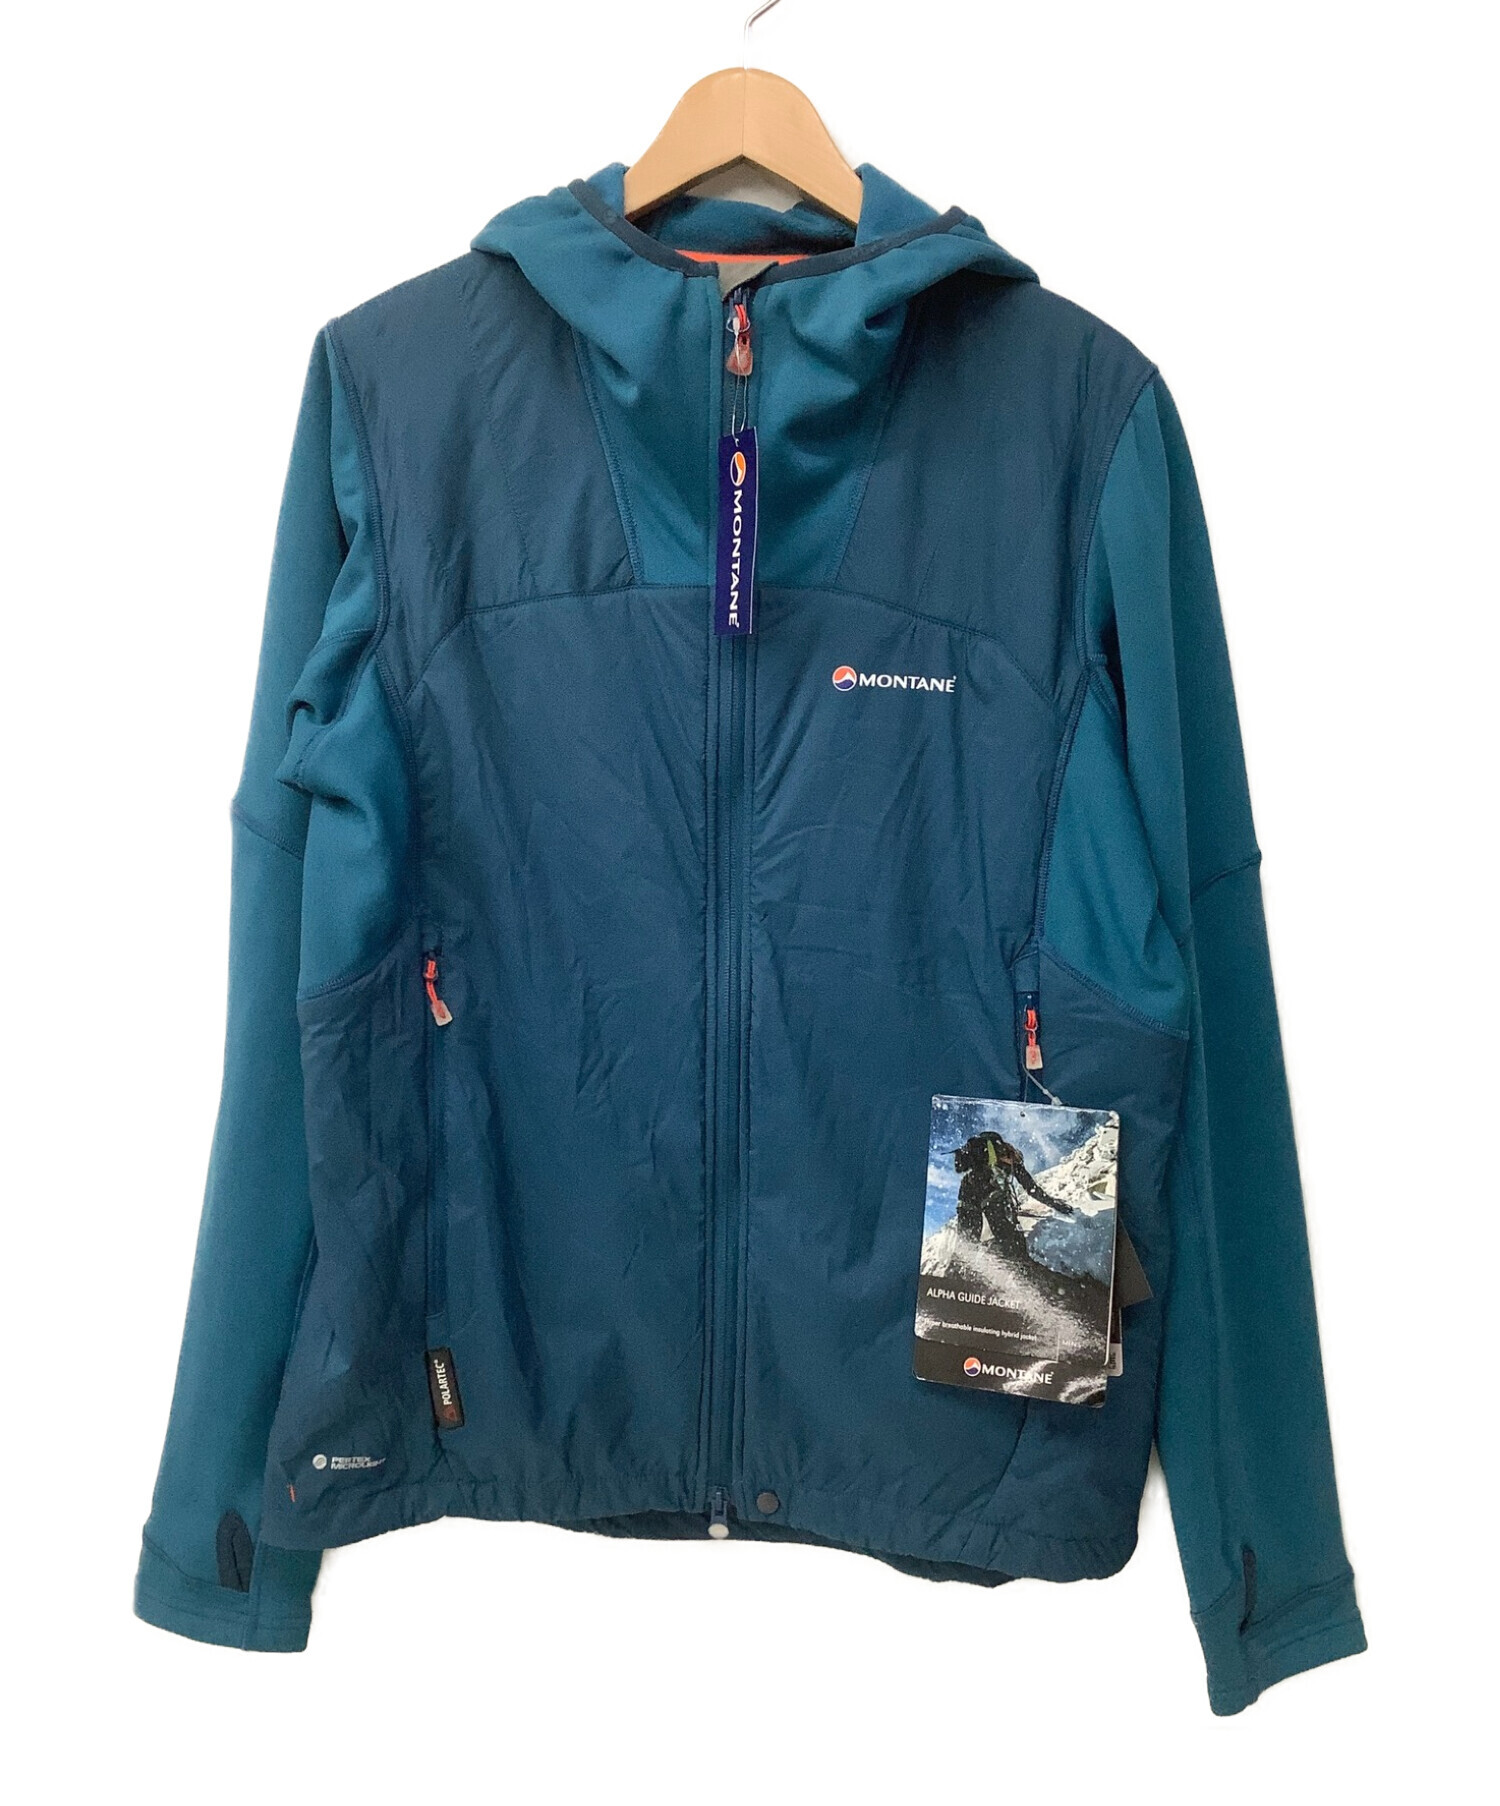 MONTANE (モンテイン) アルパインガイドジャケット ブルー サイズ:M